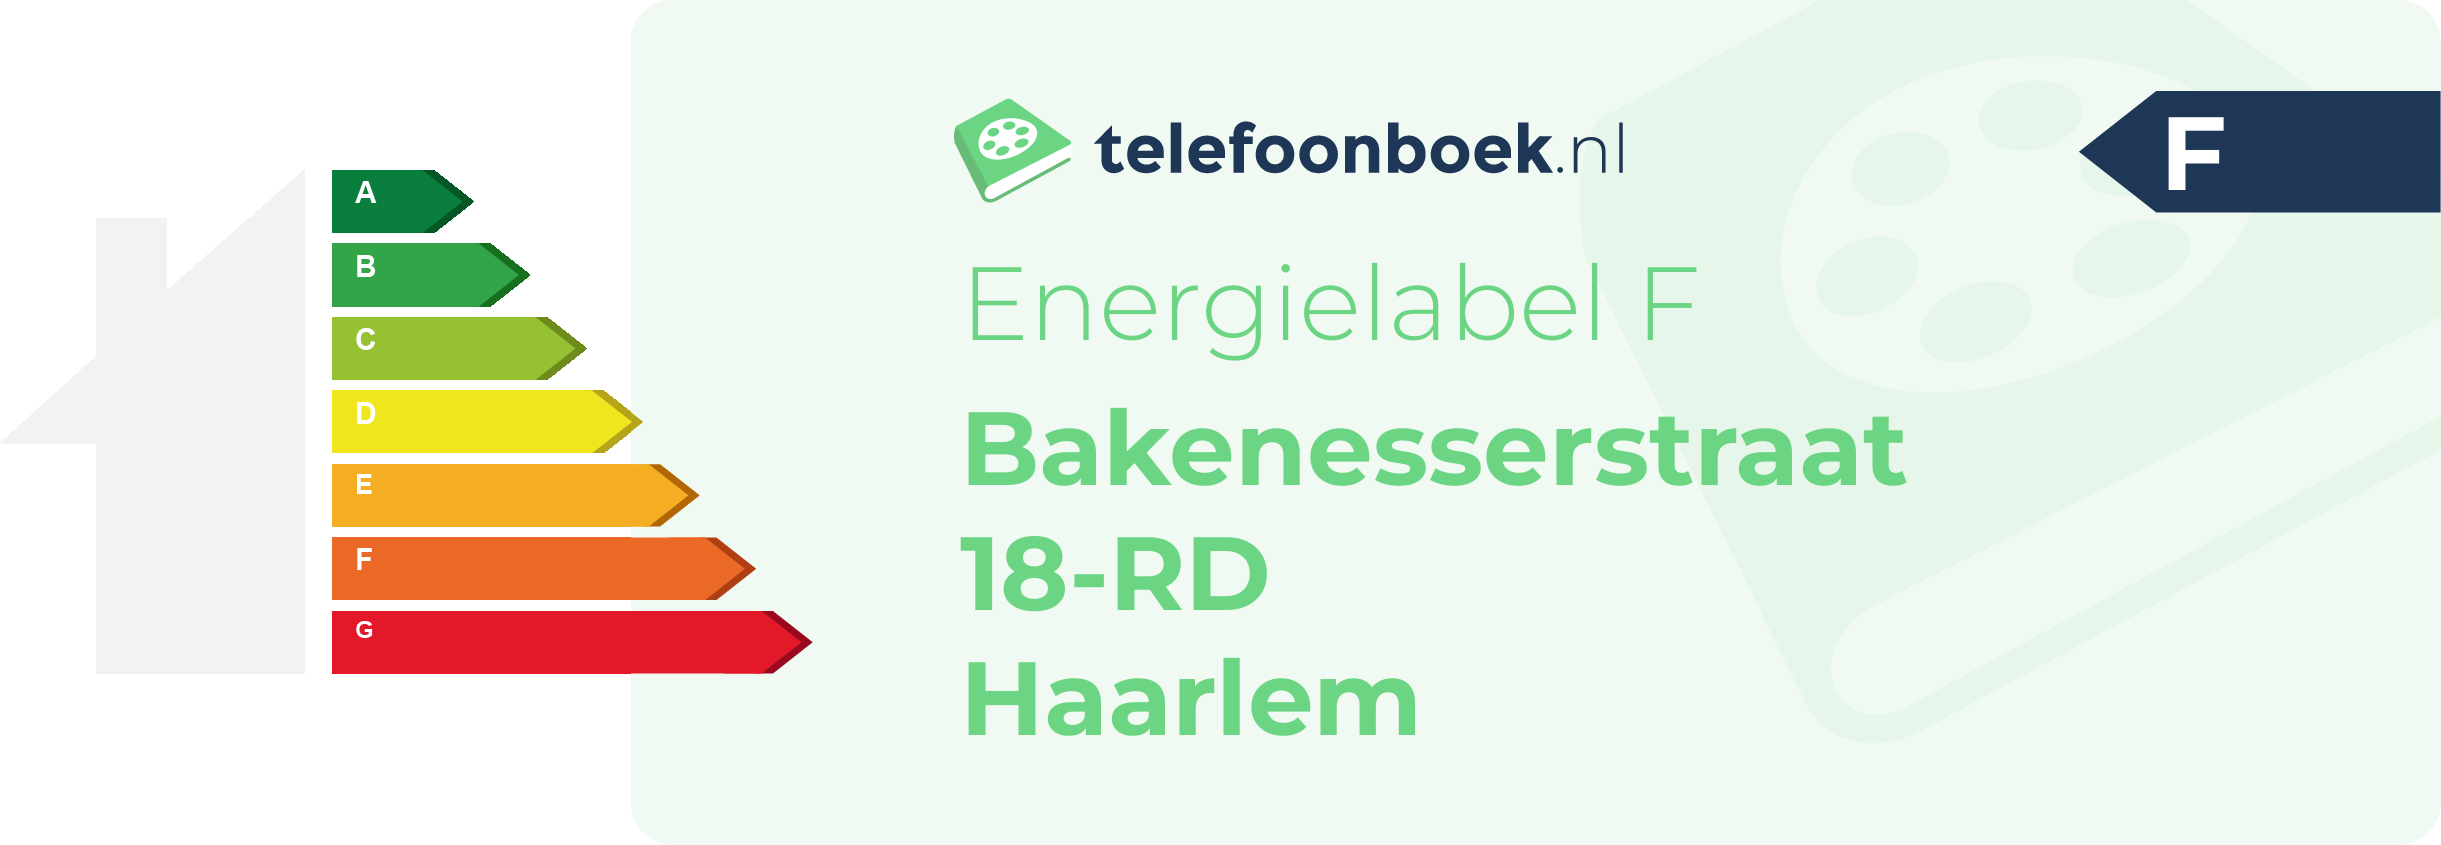 Energielabel Bakenesserstraat 18-RD Haarlem